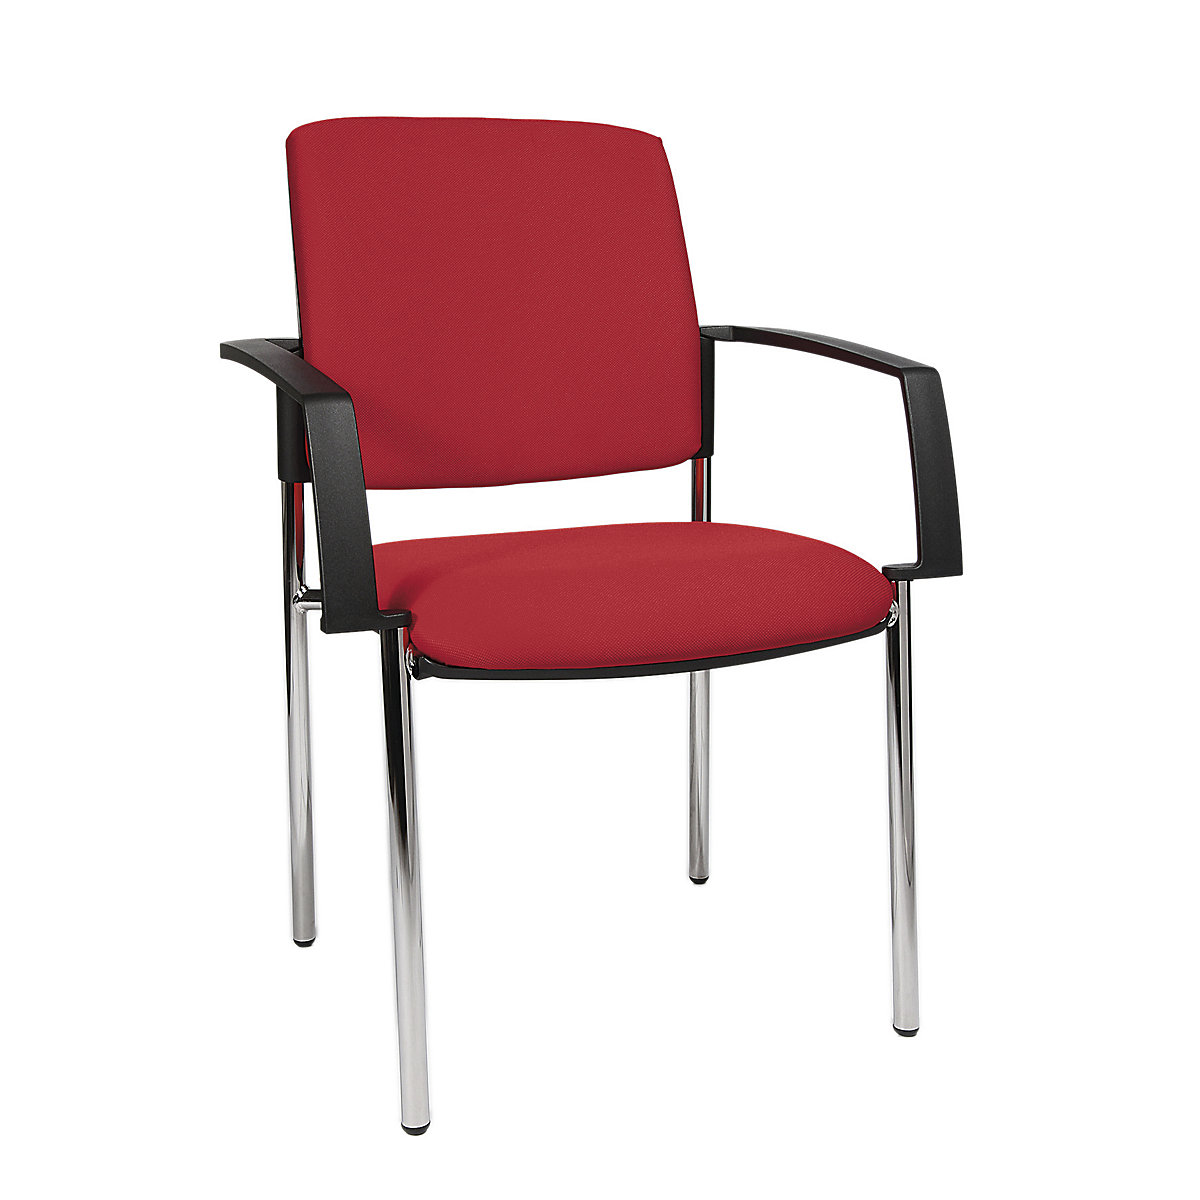 Čalúnená stohovacia stolička – Topstar, podstavec so štyrmi nohami, OJ 2 ks, podstavec pochrómovaný, čalúnenie červená-4